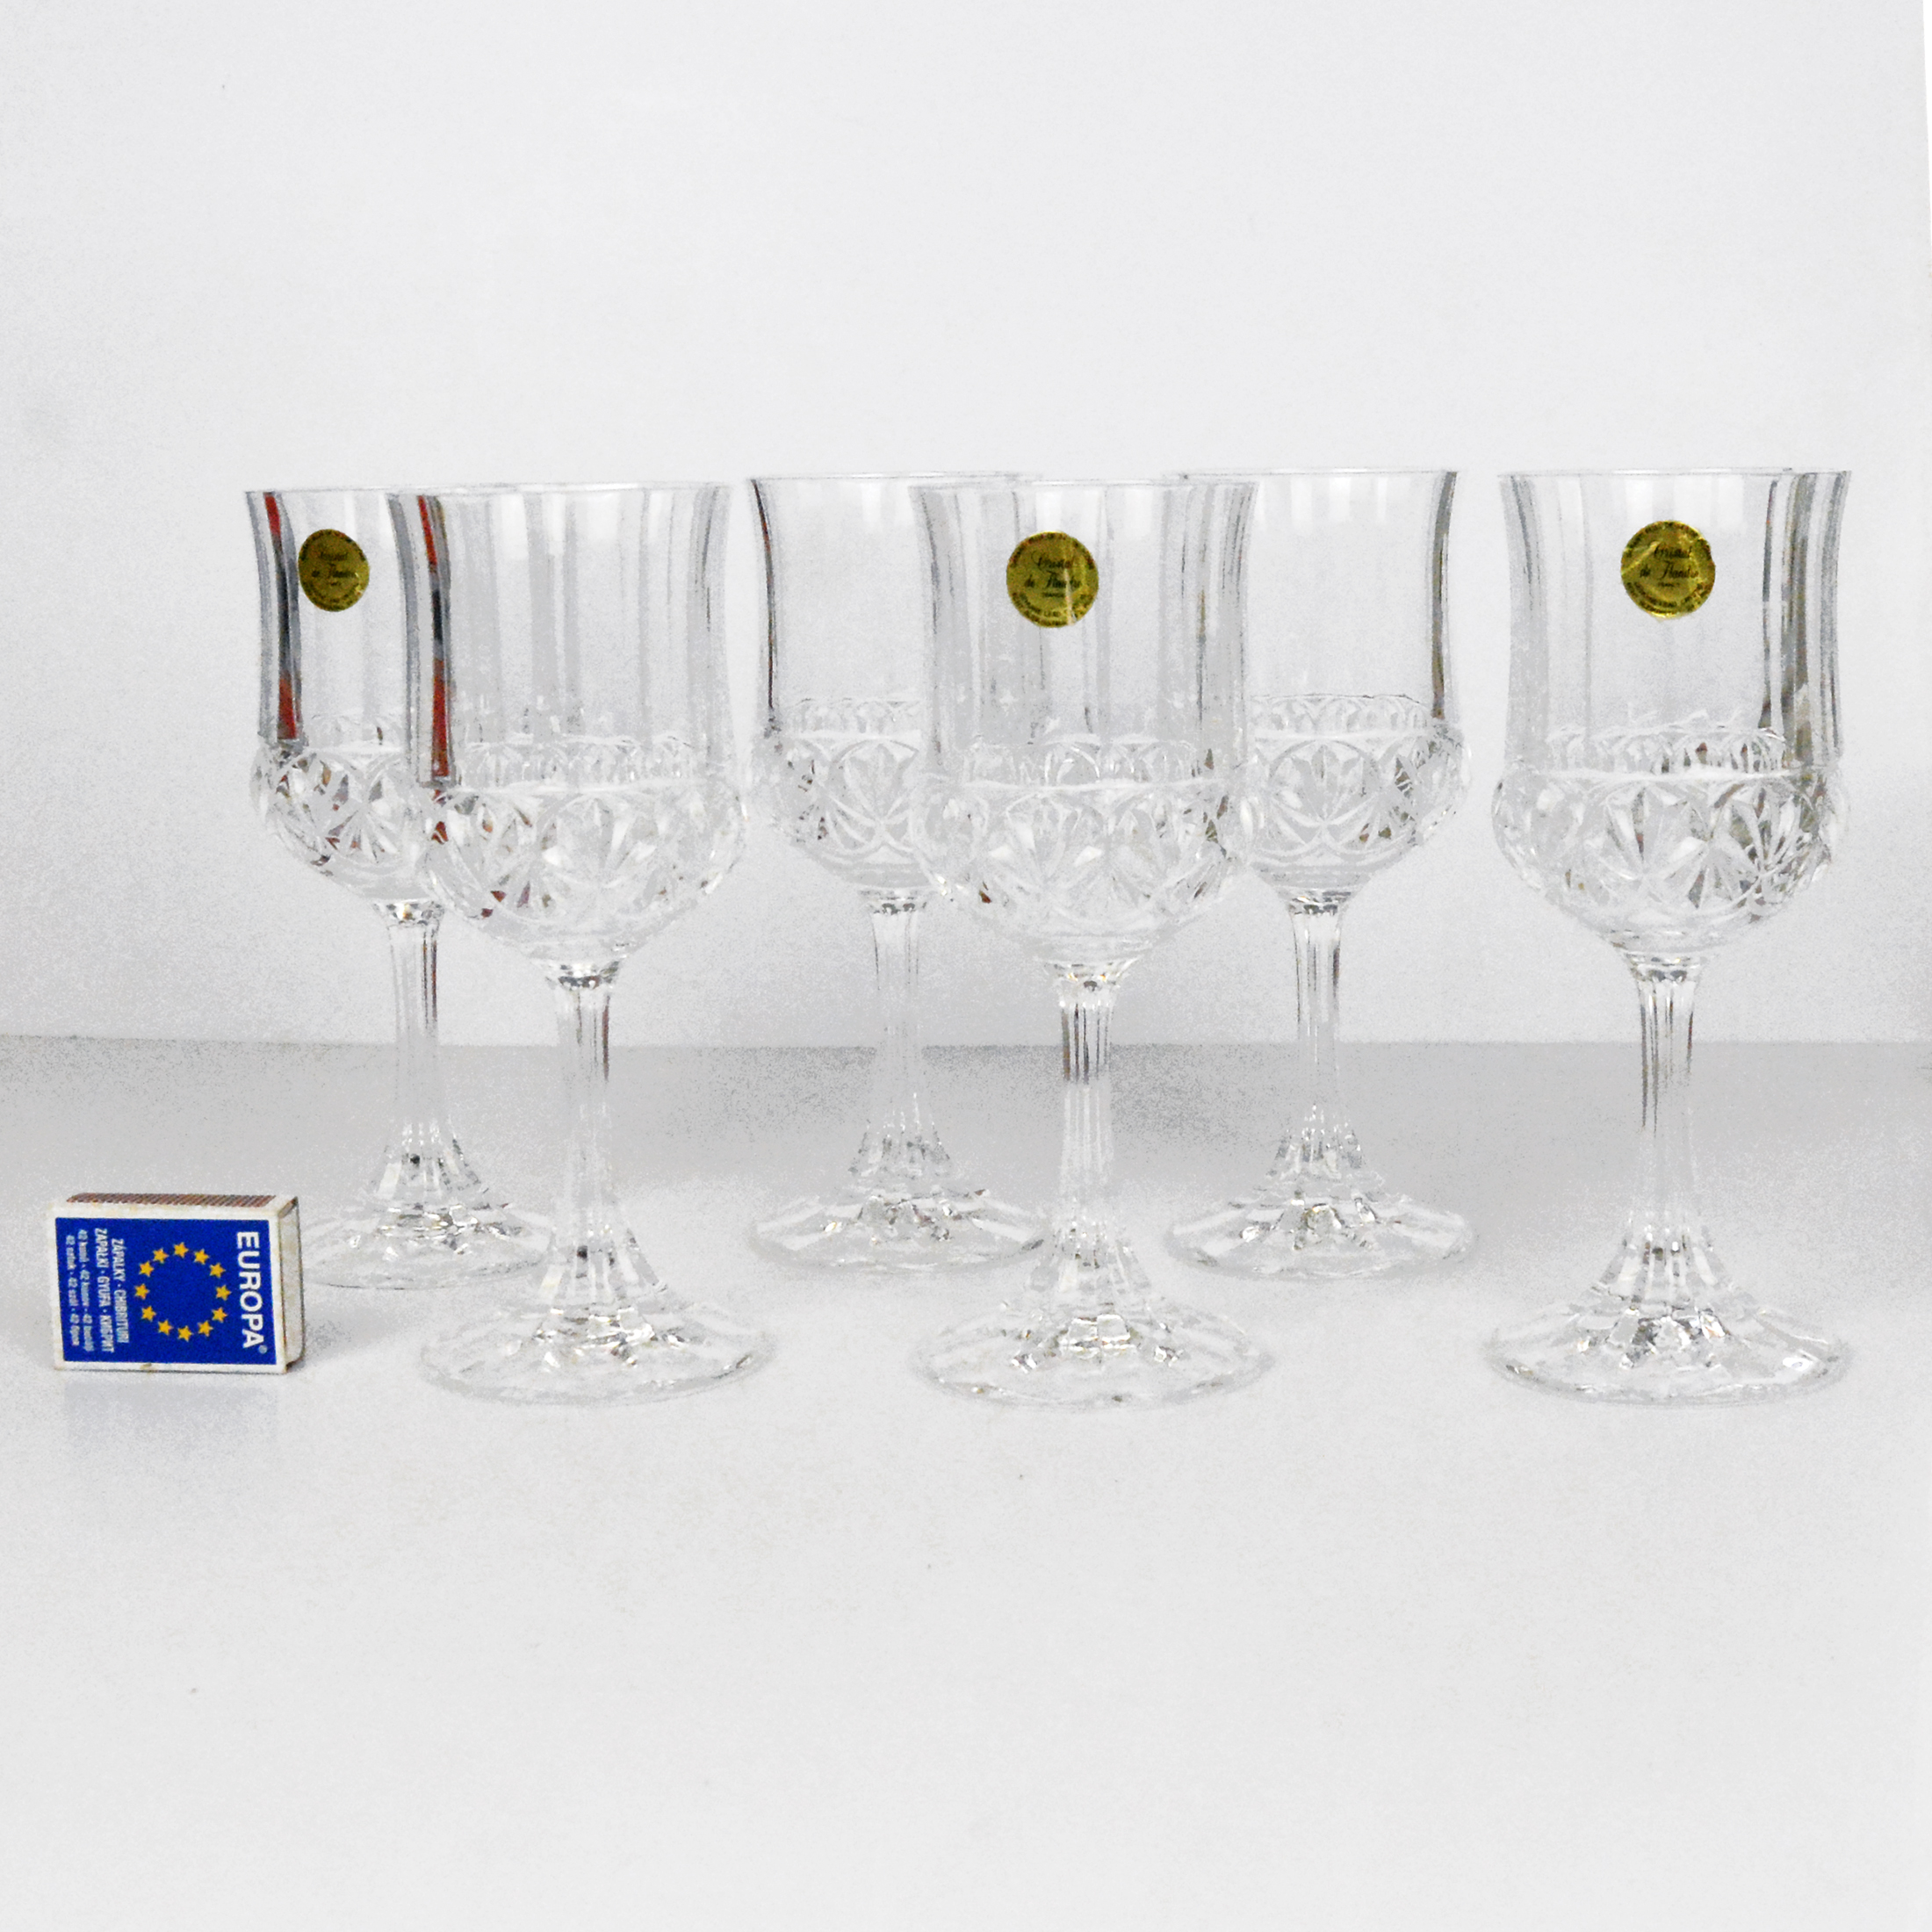 Cristal de Flandre France 24% Lead Crystal Wine Glasses 2 Sets of 4 -  Dauphine